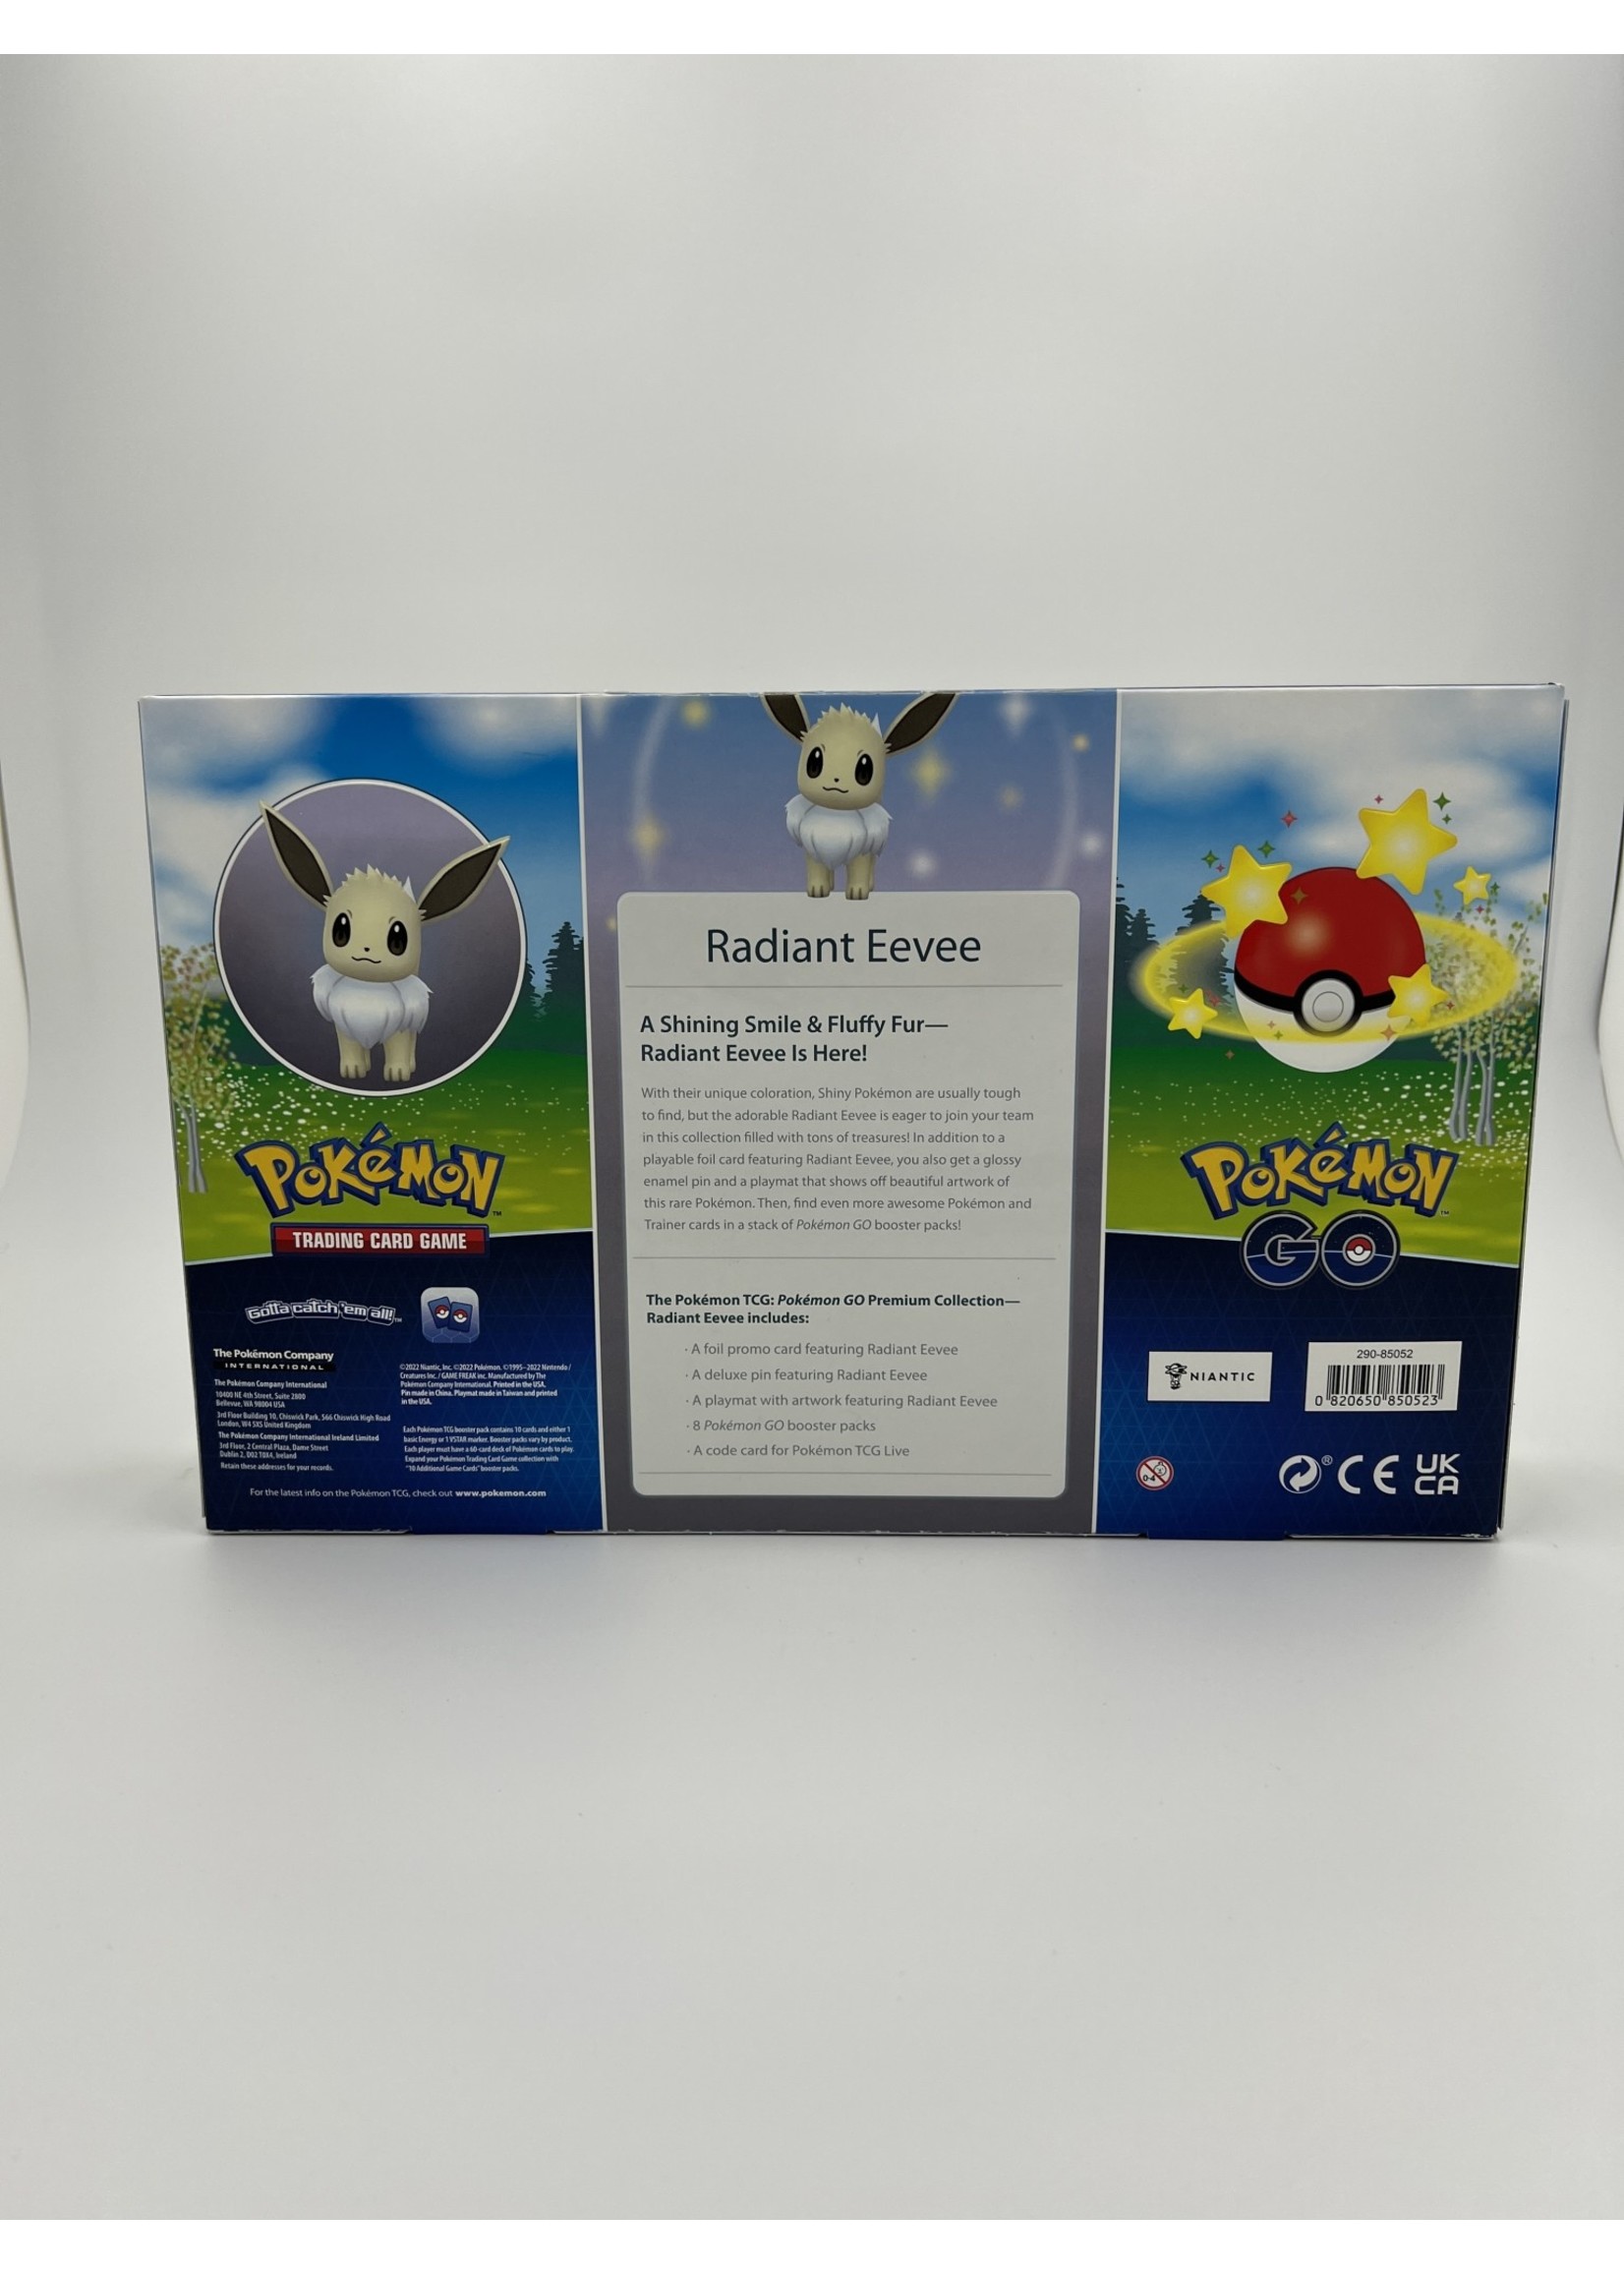 Pokemon Radiant Eevee Premium Collection Pokemon Go